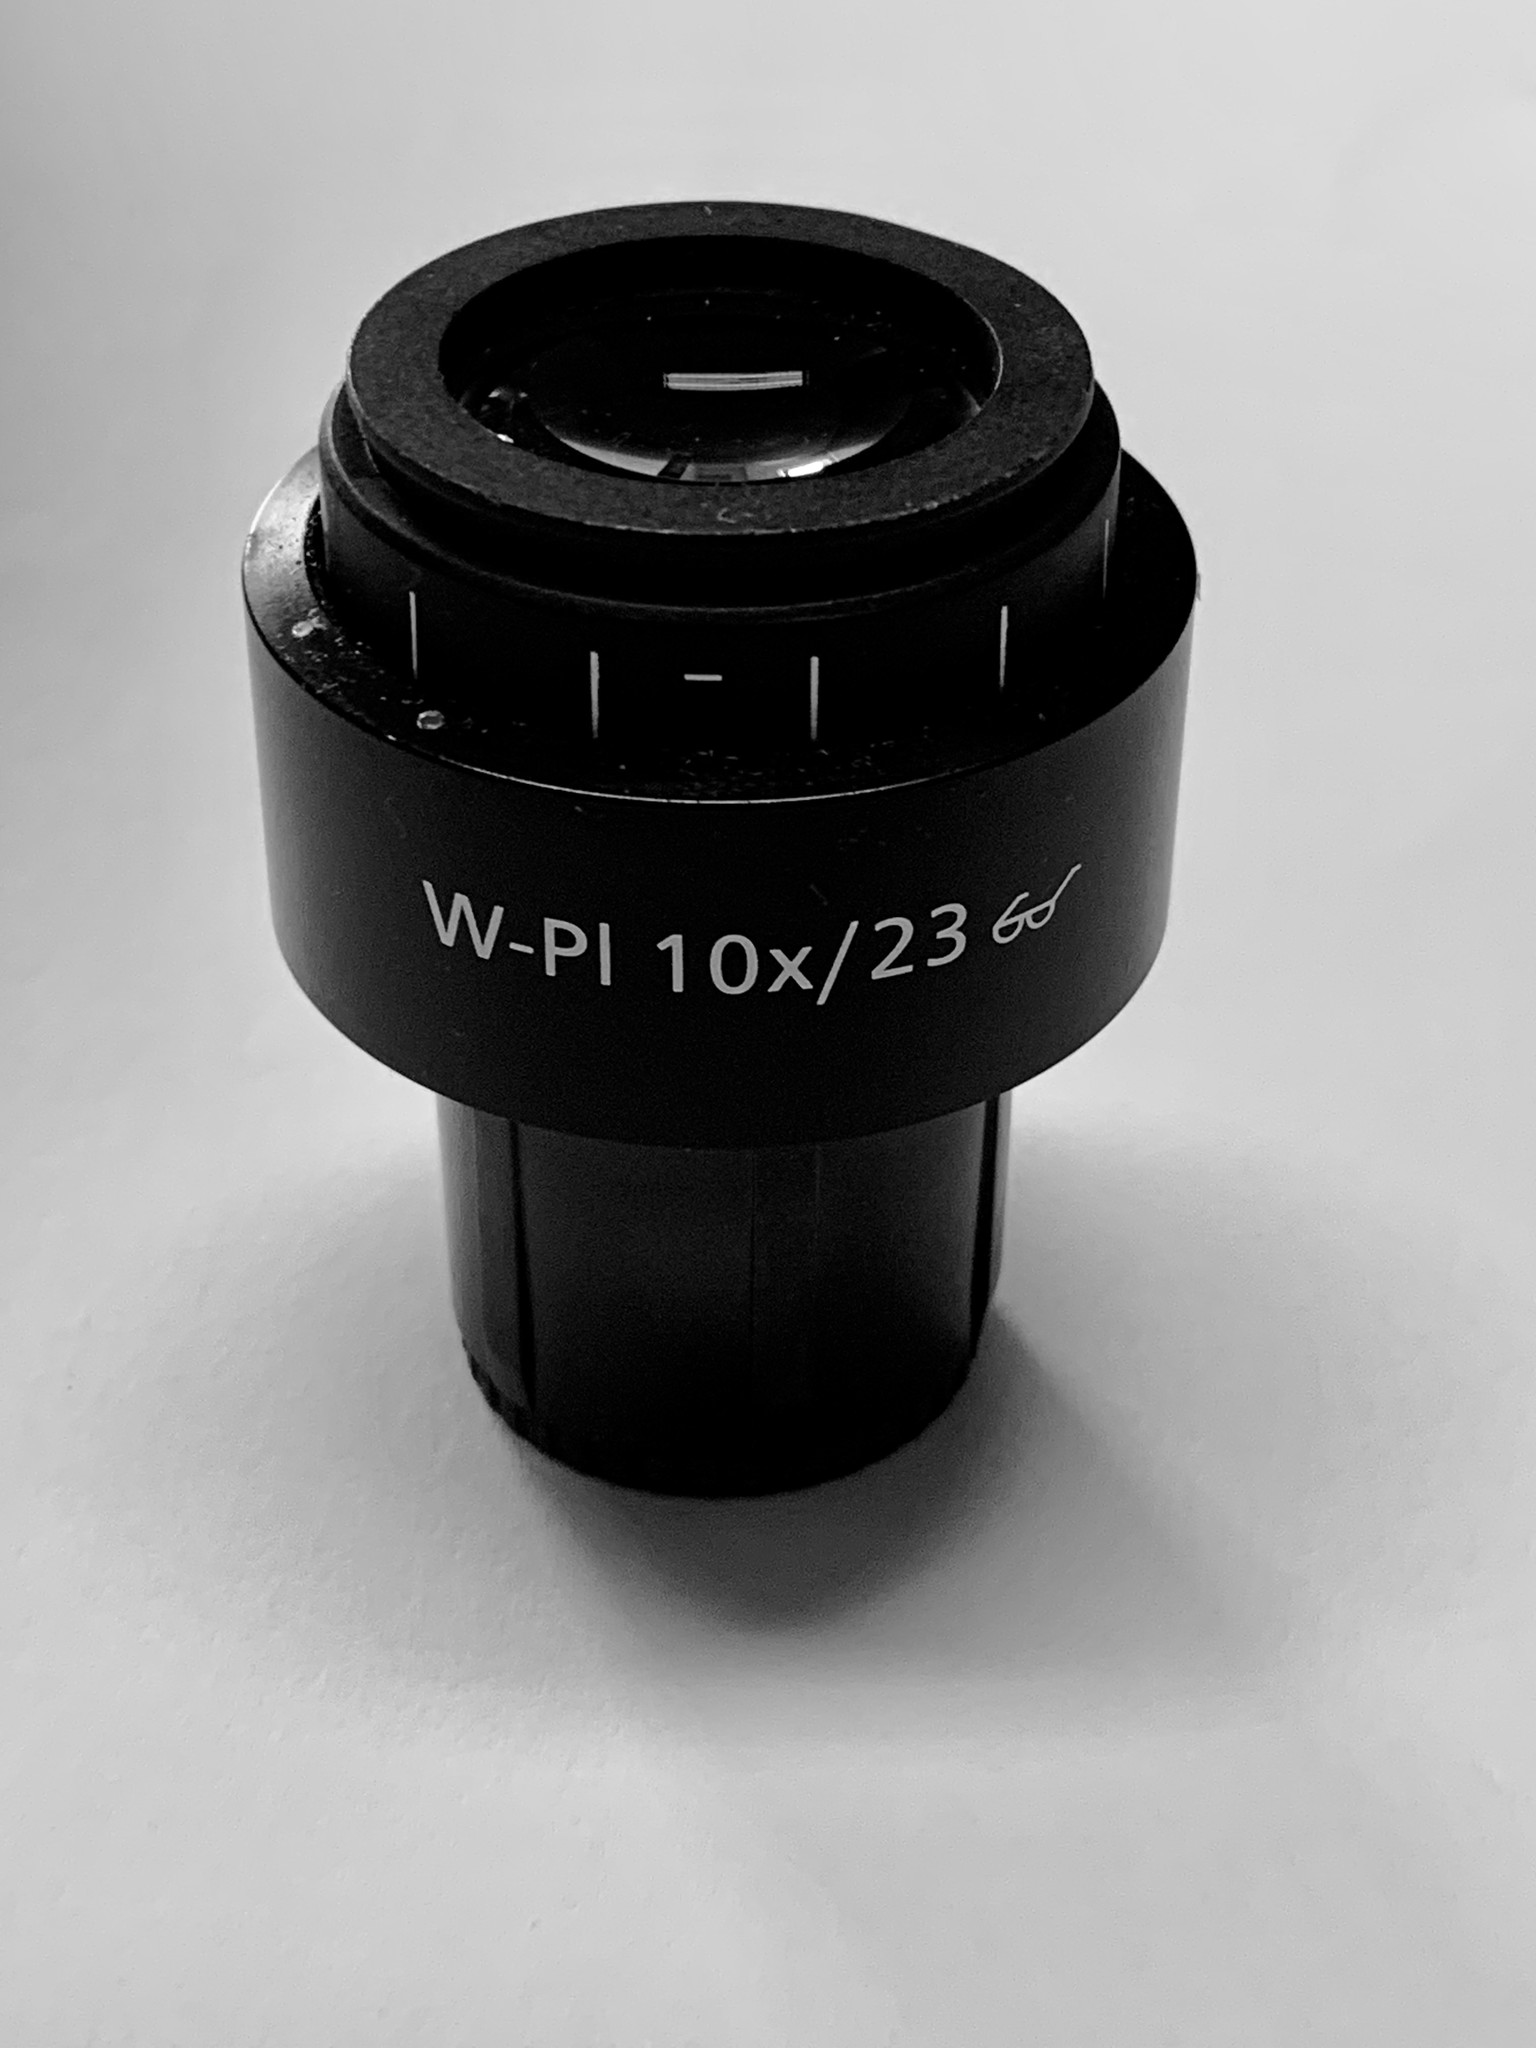 Zeiss Okular W-PL 10x/23 (455043)